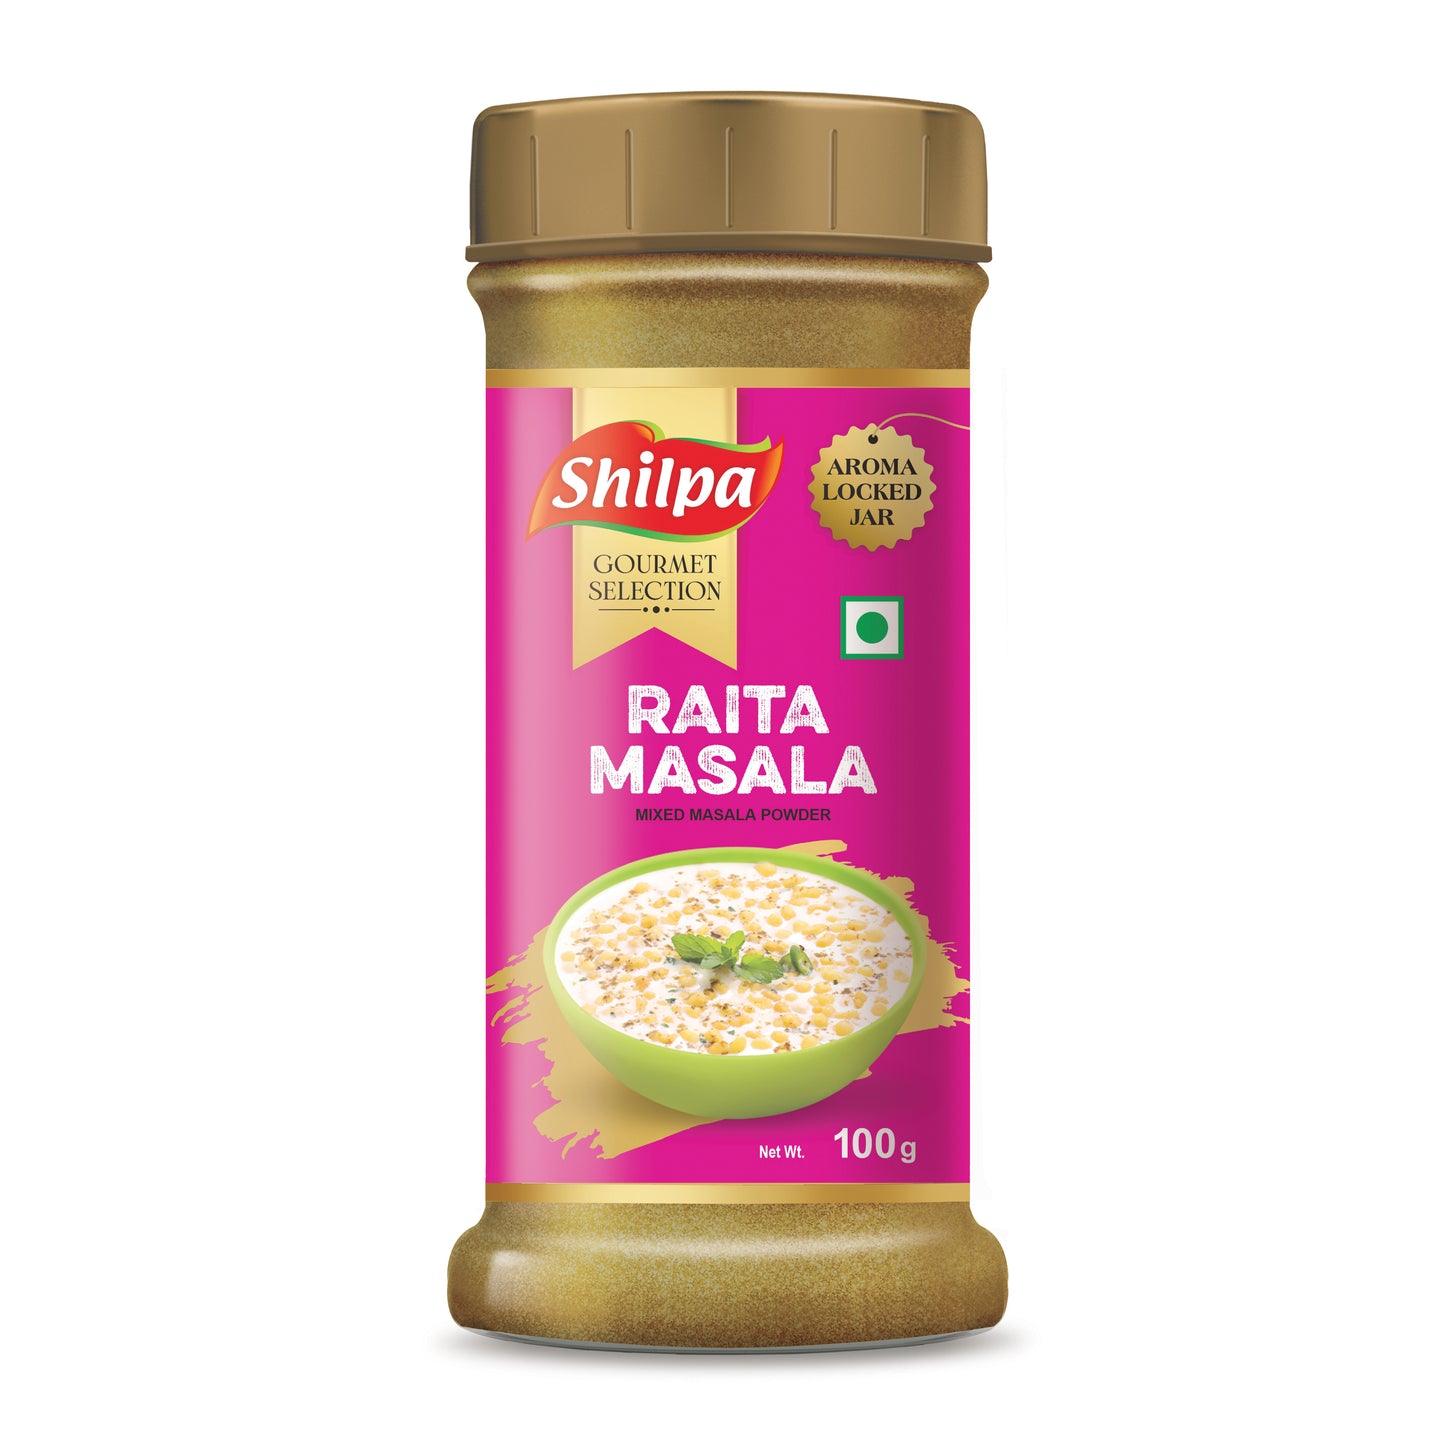 Shilpa Raita Masala, Mixed Masala Powder 100g Jar